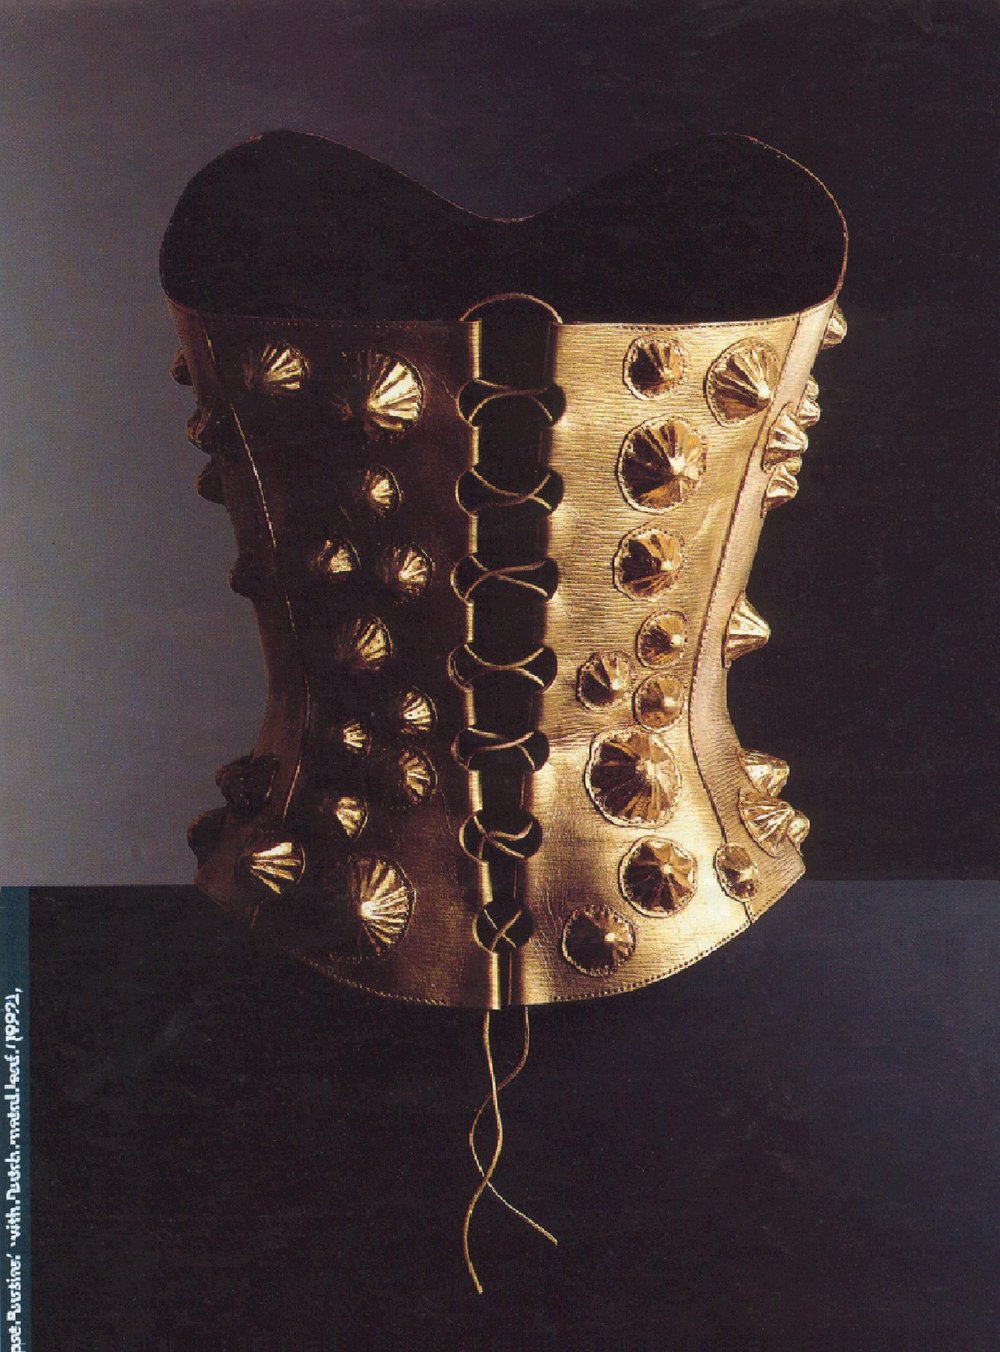 whitaker-malem-fashion-limpet-bustier-formed-gold-leaf-leather.jpg